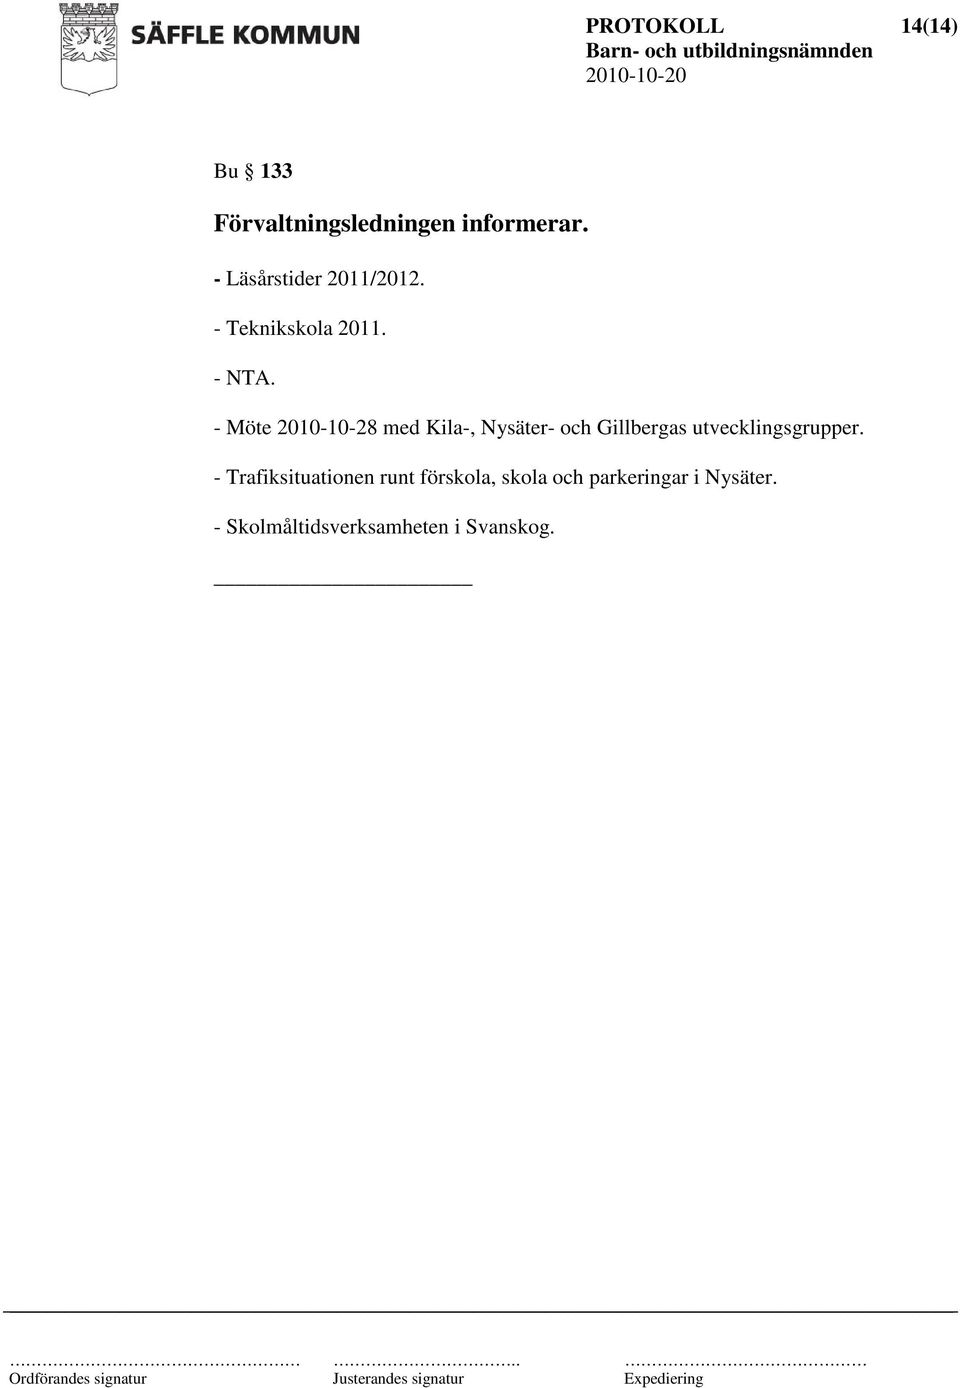 - Möte 2010-10-28 med Kila-, Nysäter- och Gillbergas utvecklingsgrupper.